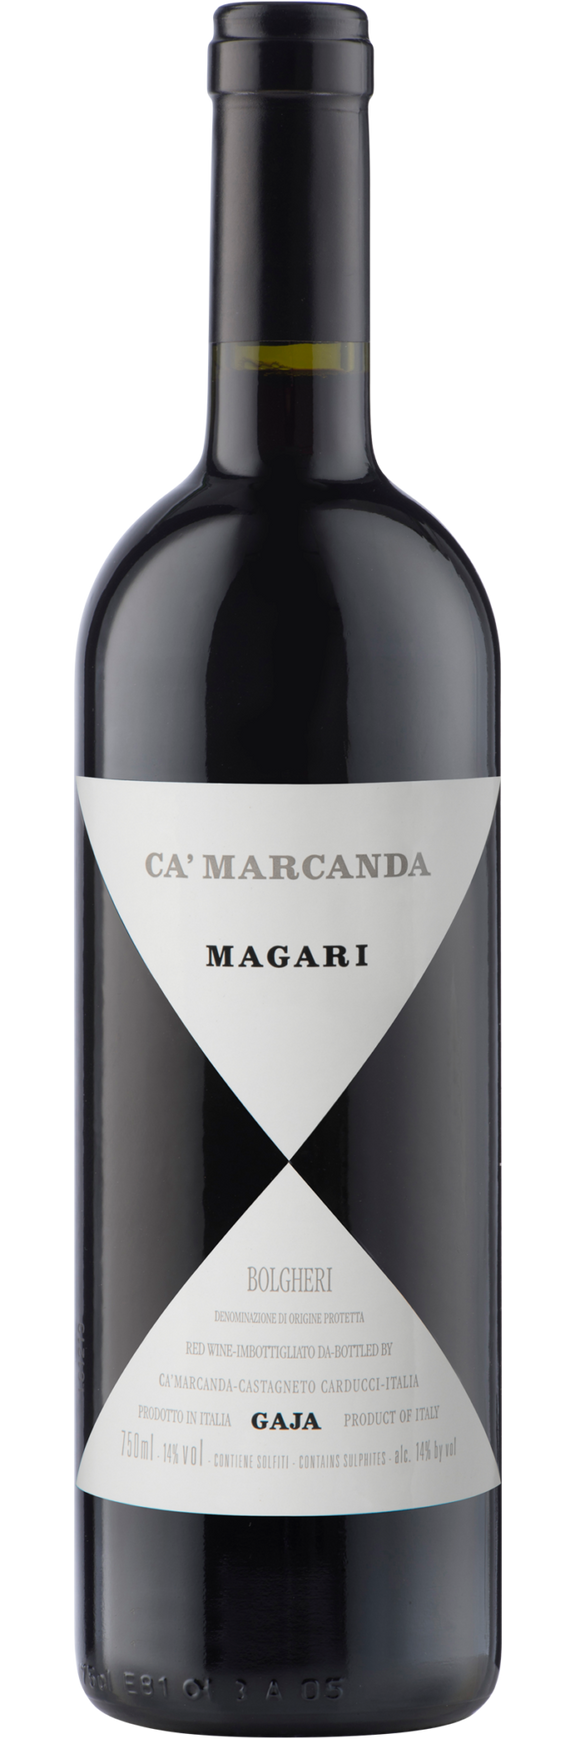 Gaja Ca Marcanda, Magari, 2018